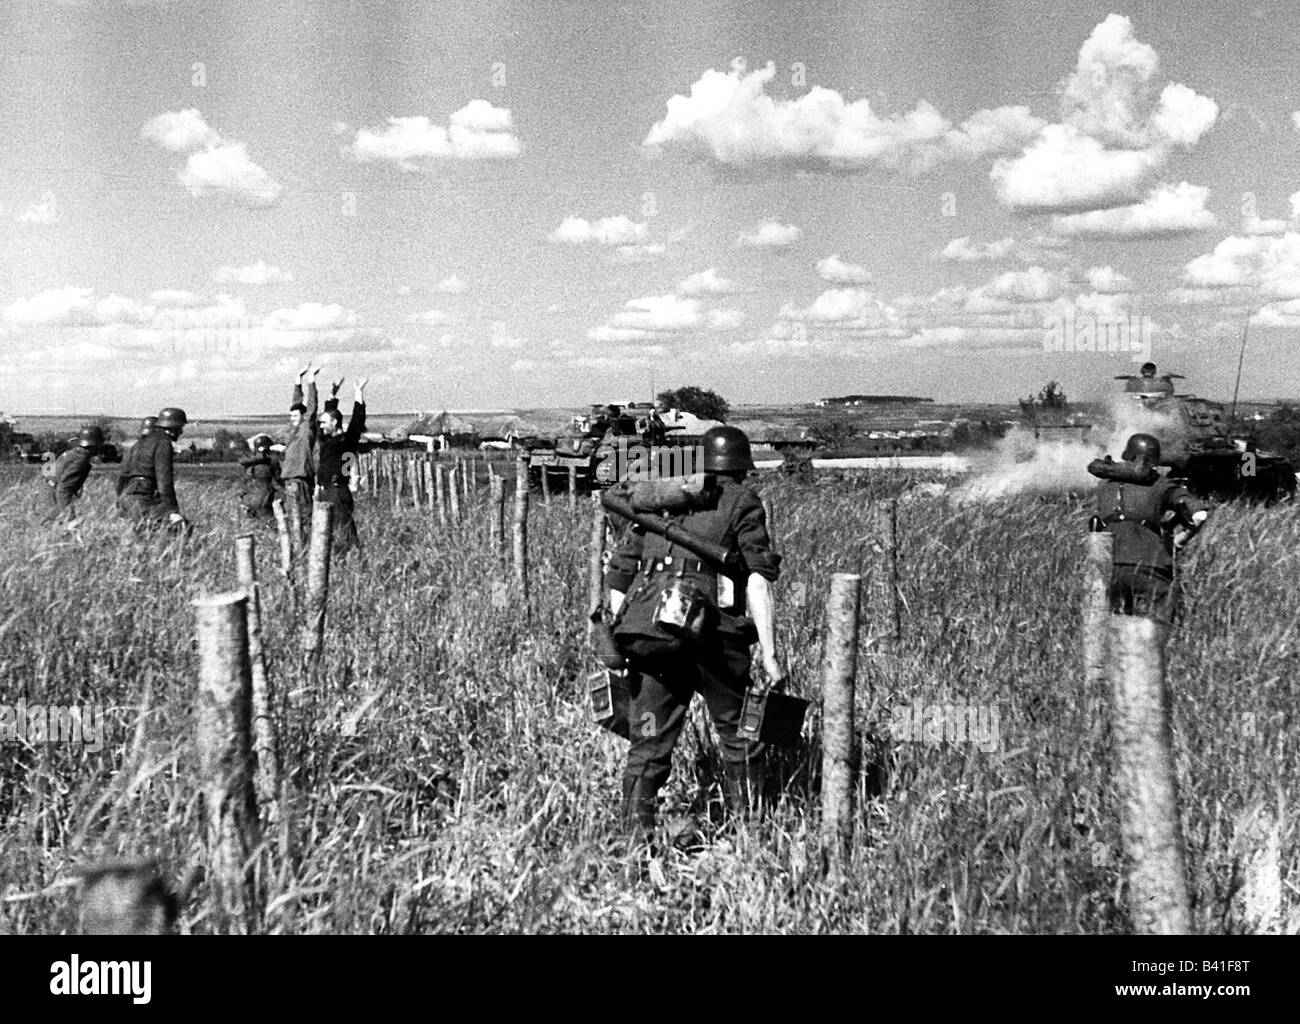 Événements, seconde Guerre mondiale / seconde Guerre mondiale, Russie 1941, avance allemande, infanterie suivant des chars, photo de propagande, Banque D'Images